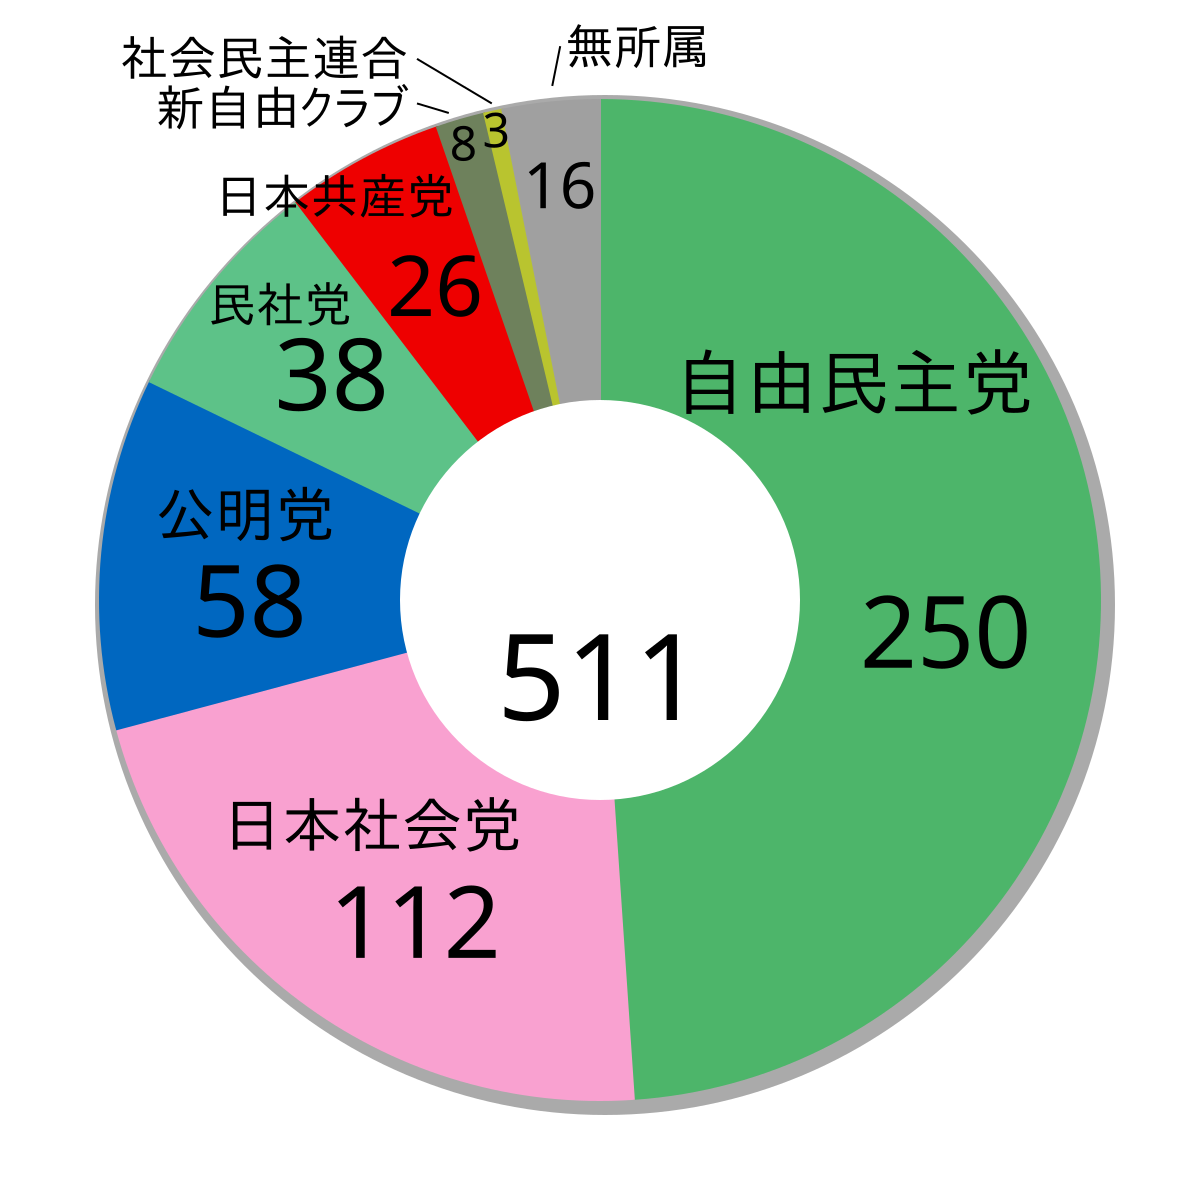 第37屆日本眾議院議員總選舉 維基百科 自由嘅百科全書